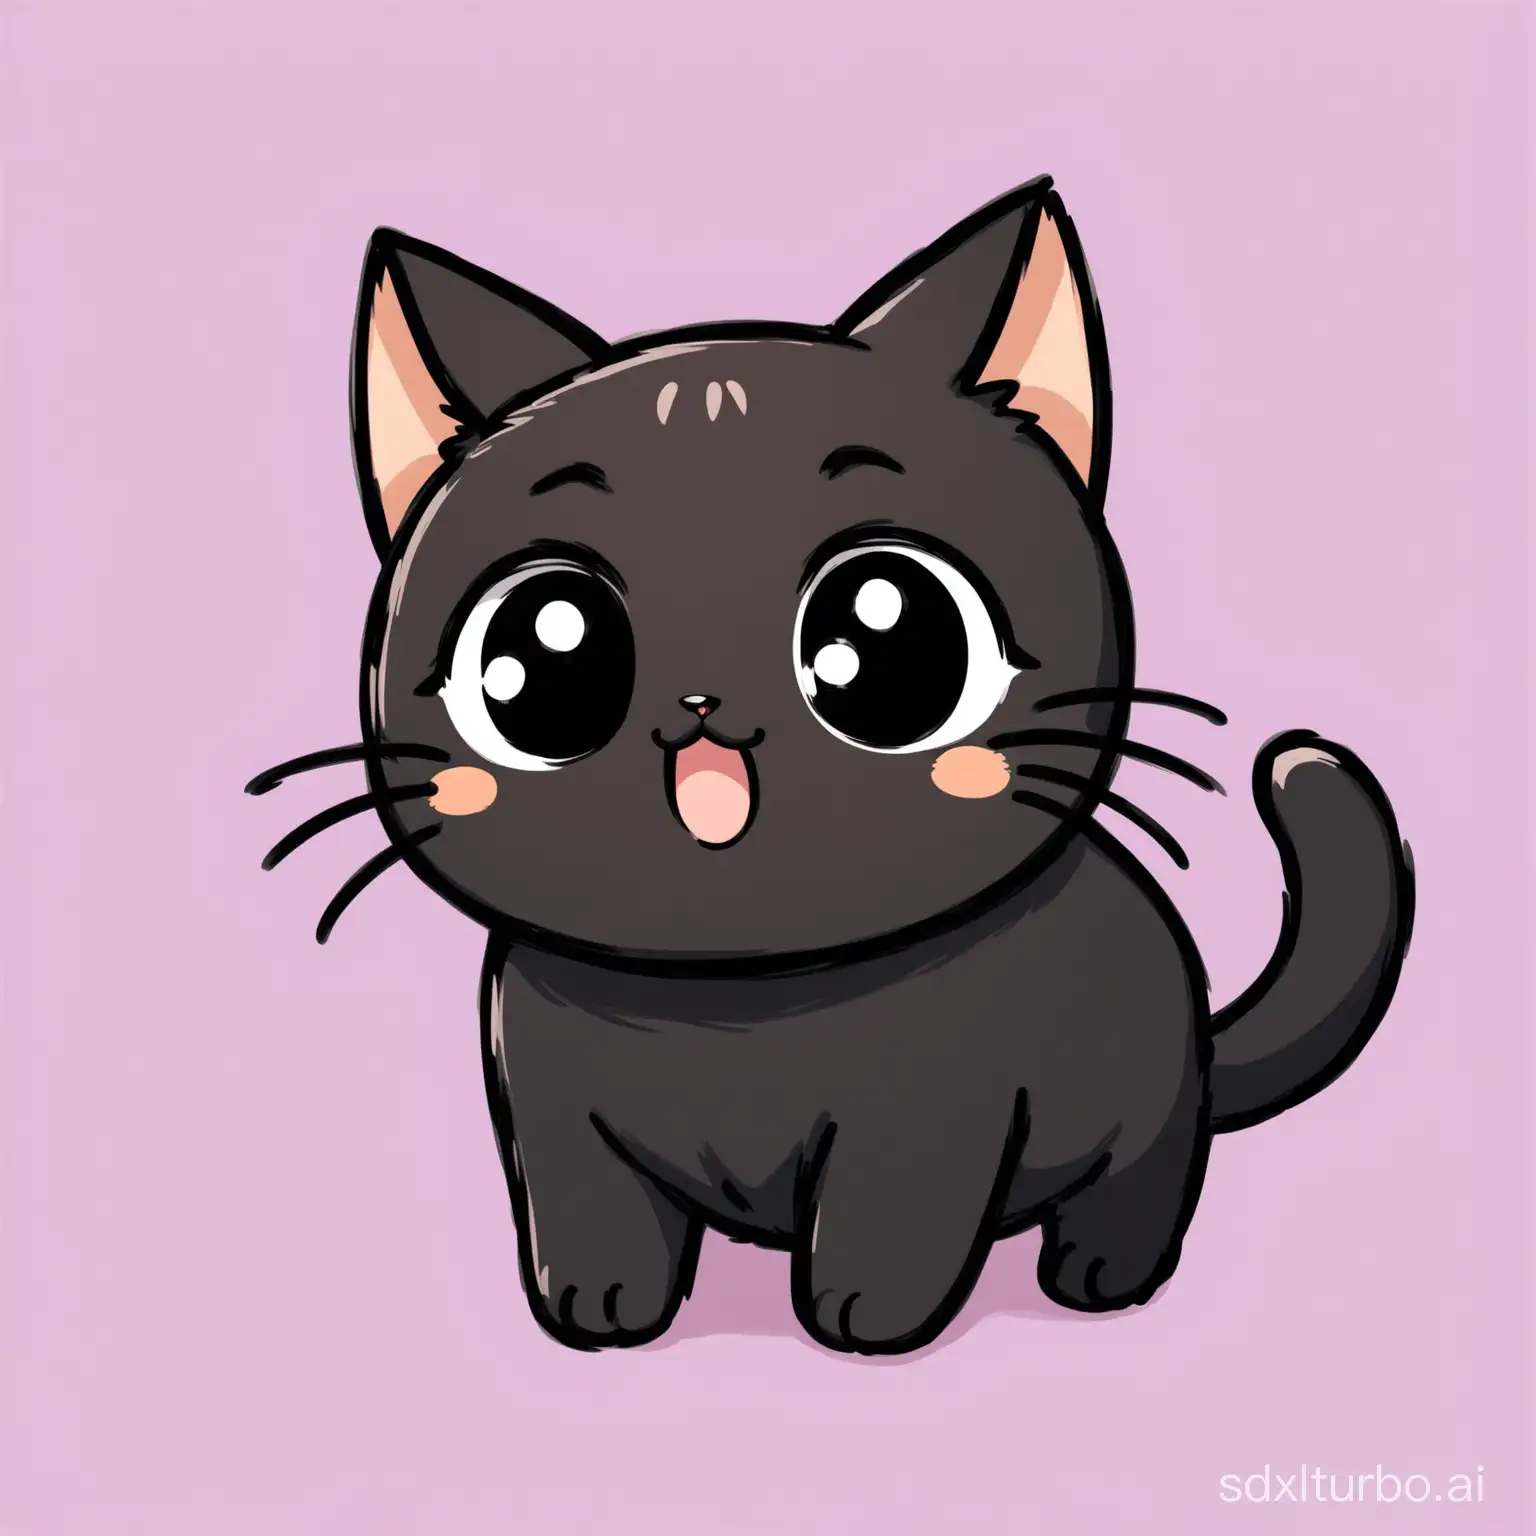 Draw a very cute black cat